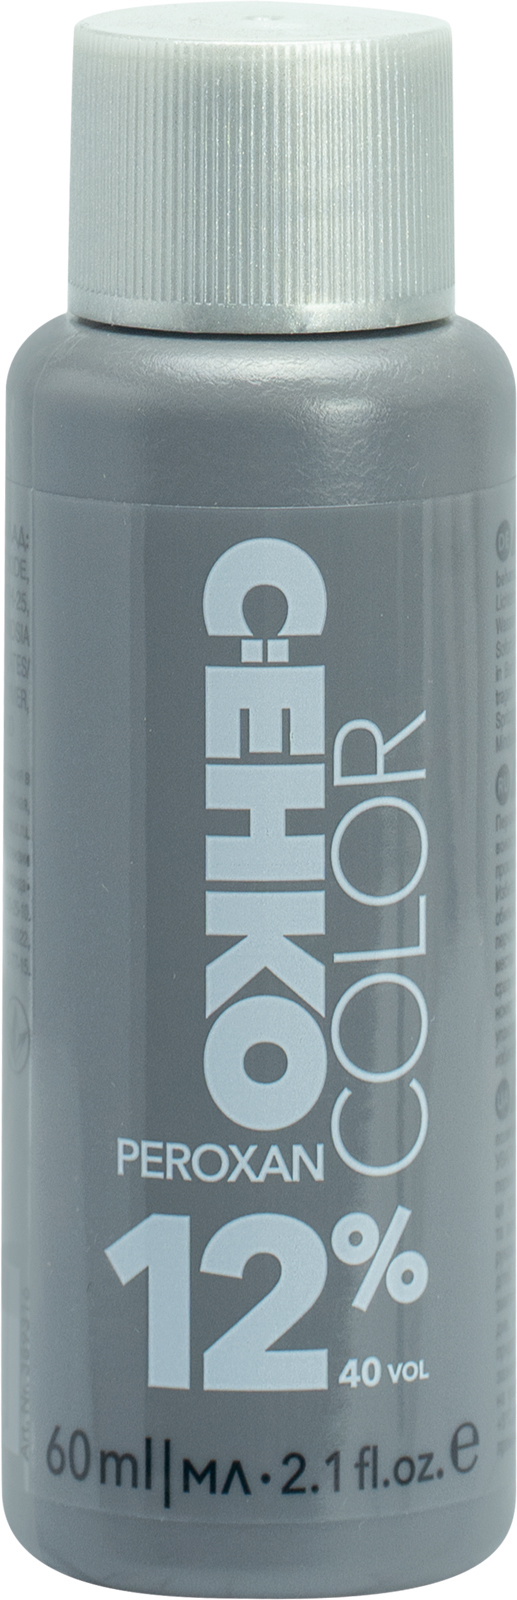 Пероксан 12% C:EHKO 60ml